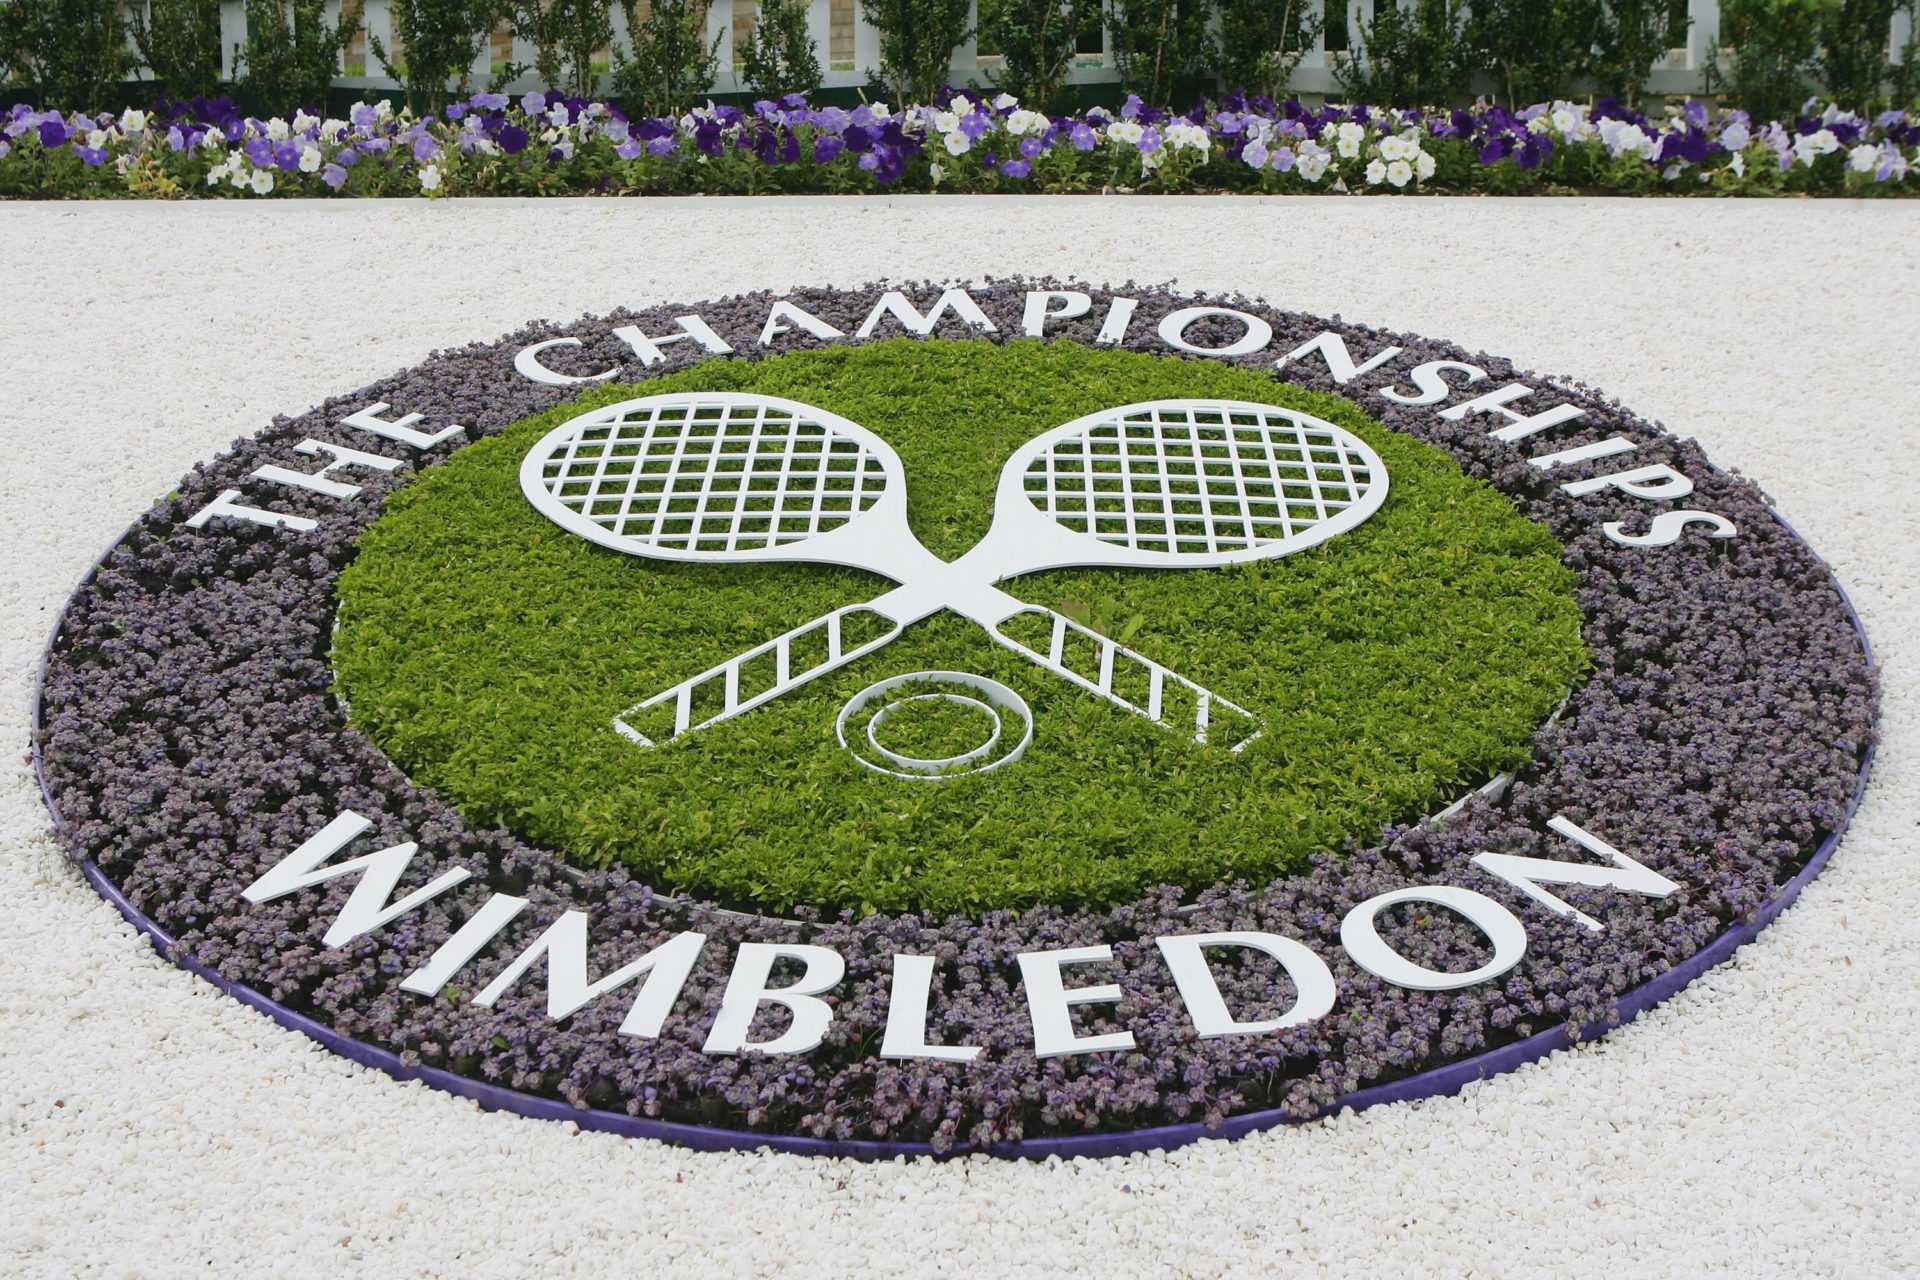 Championnats de Wimbledon et autres événements de tennis britanniques pour réduire leurs finances